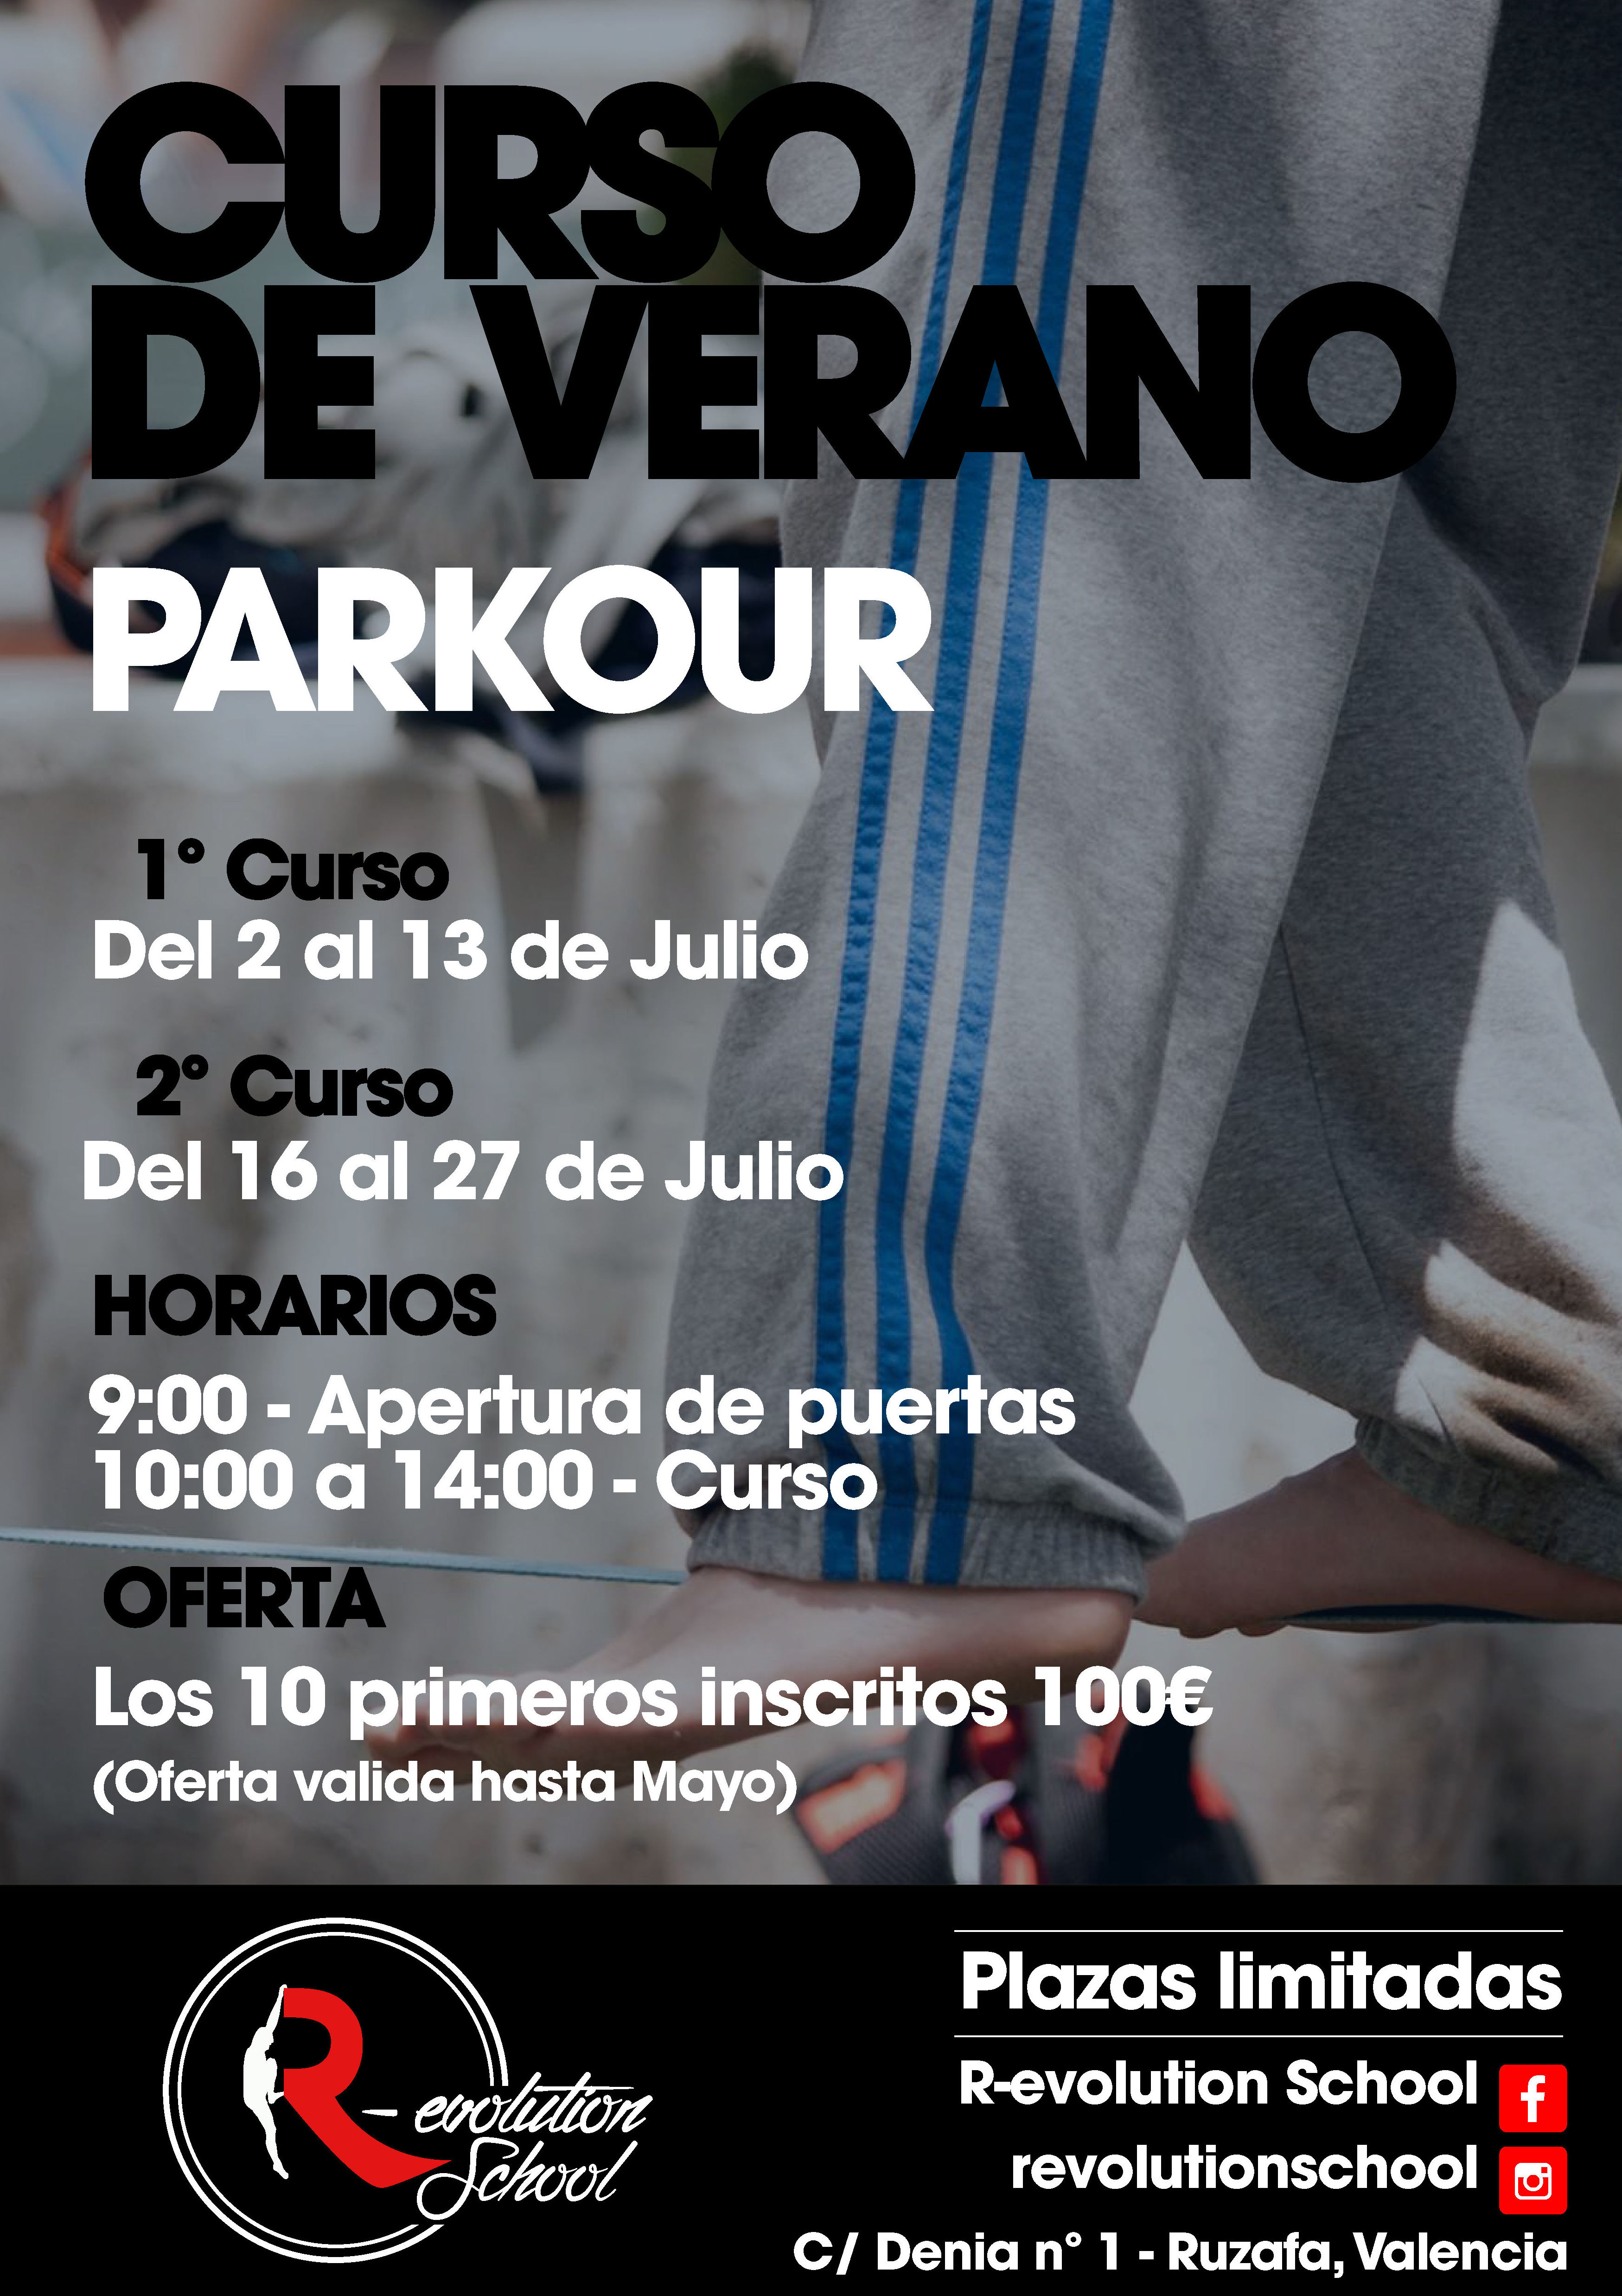 Cursos verano Parkour Valencia 